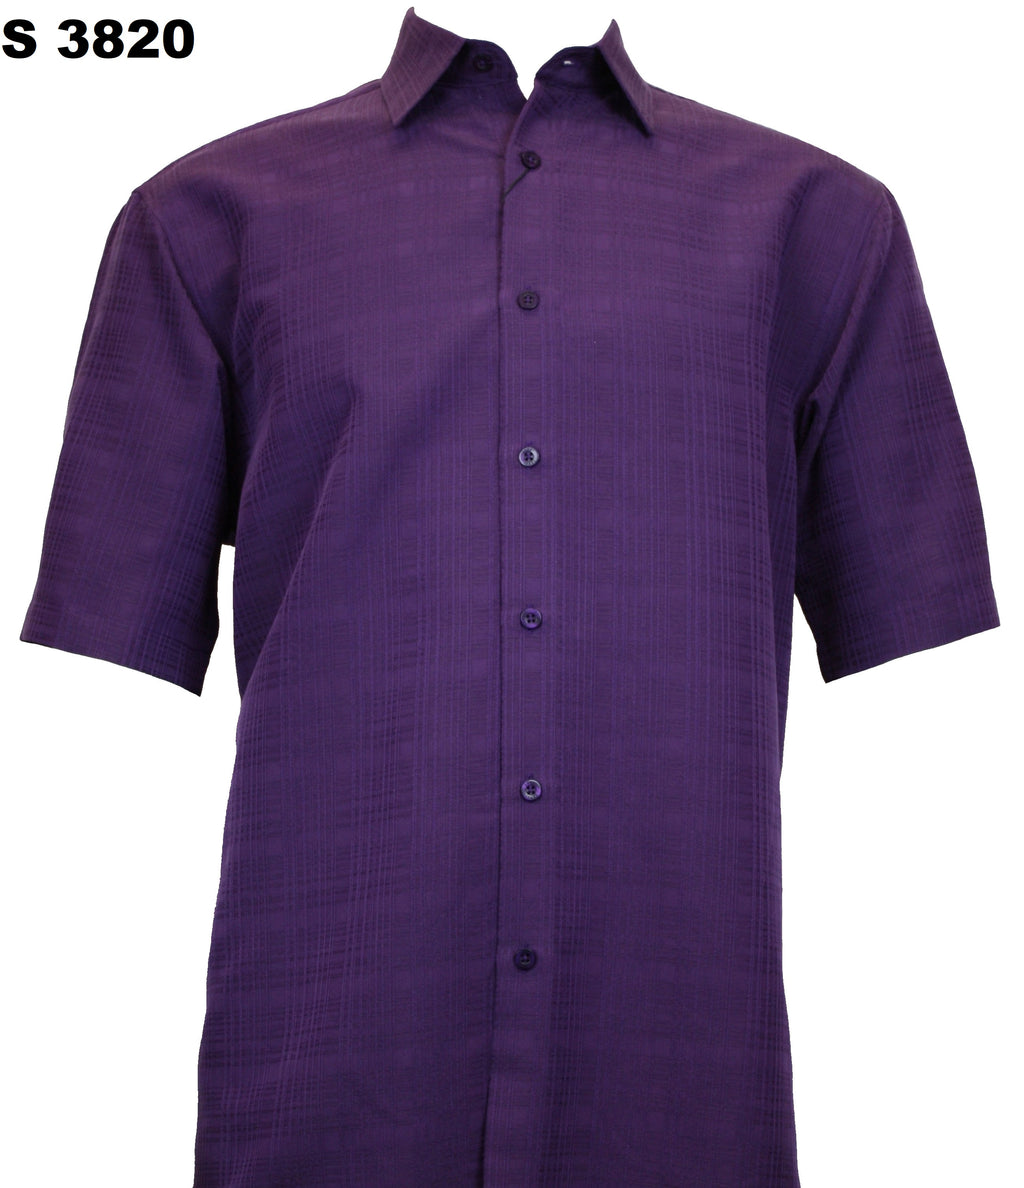 Sangi Short Sleeve Shirt S 3820